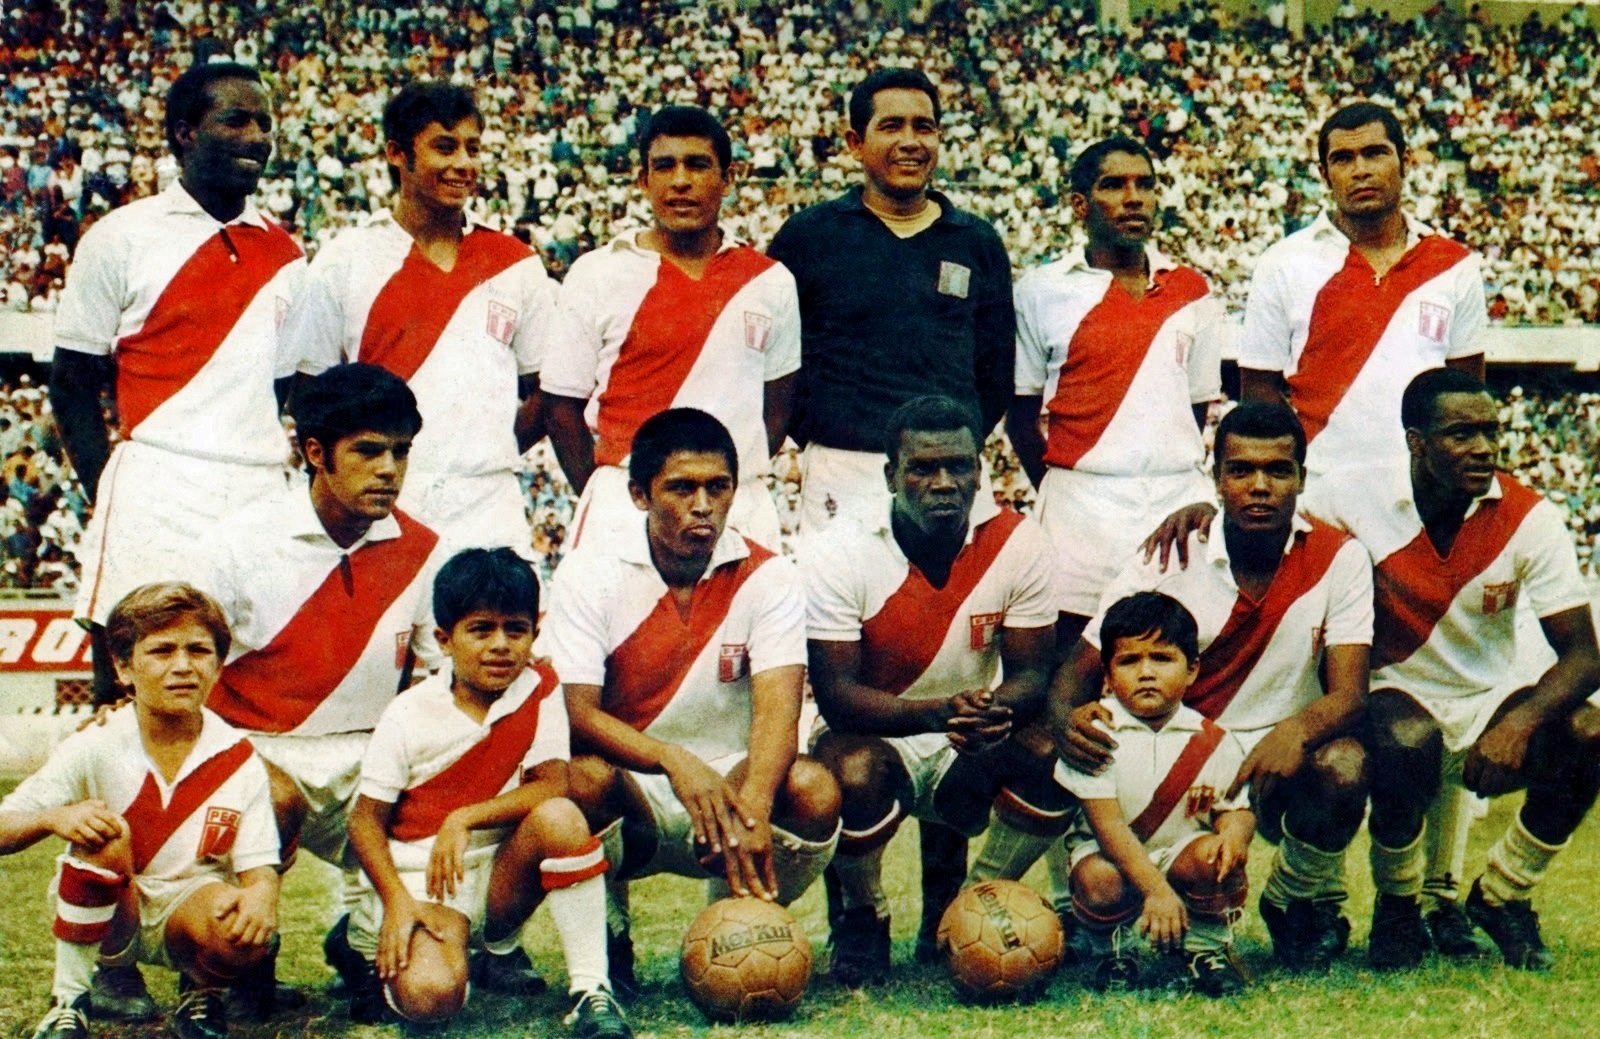 peru national football team jersey